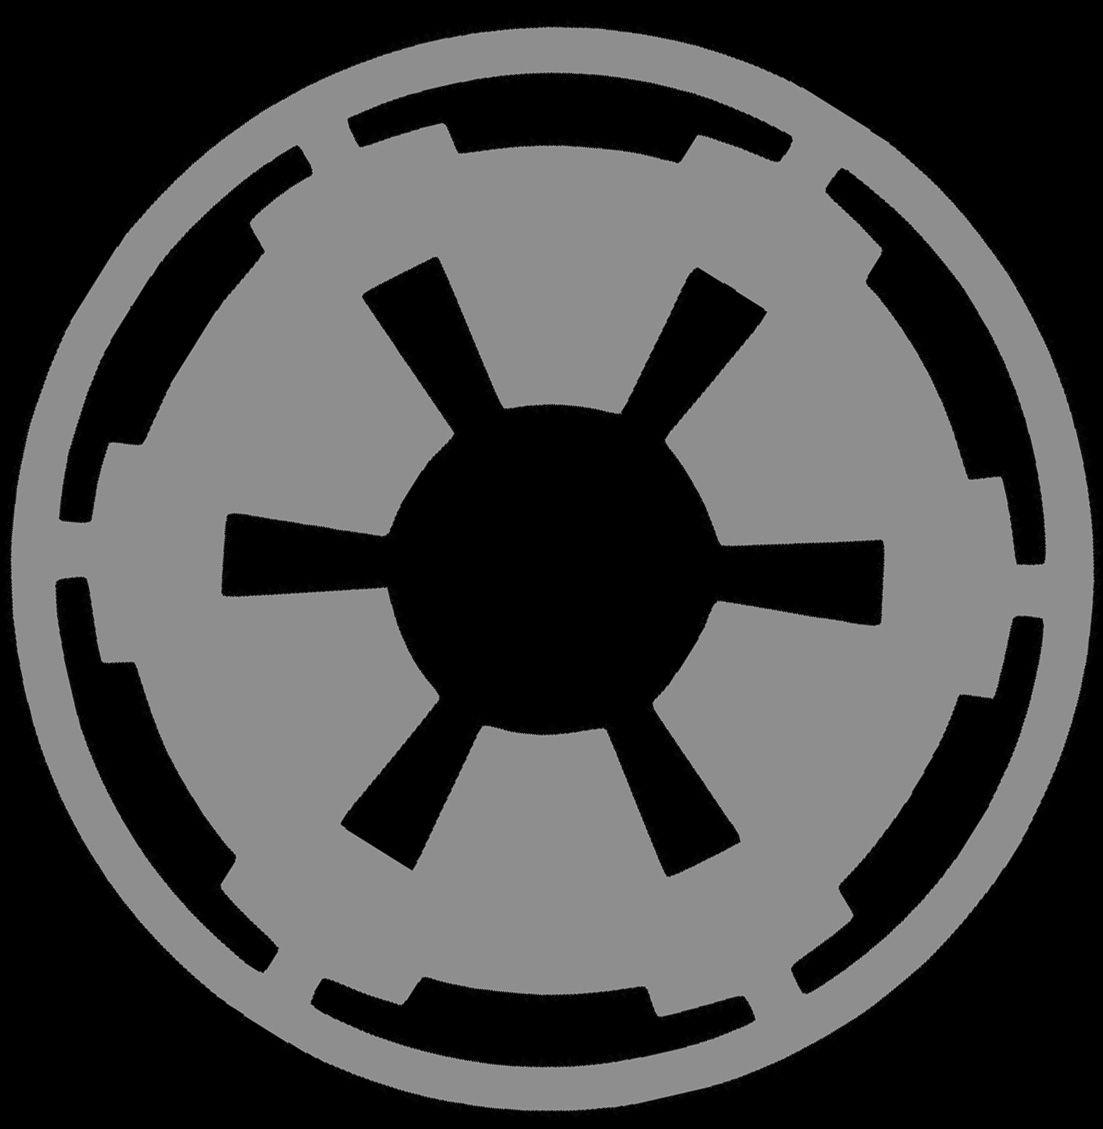 Galactic Empire Logo - Galactic empire Logos